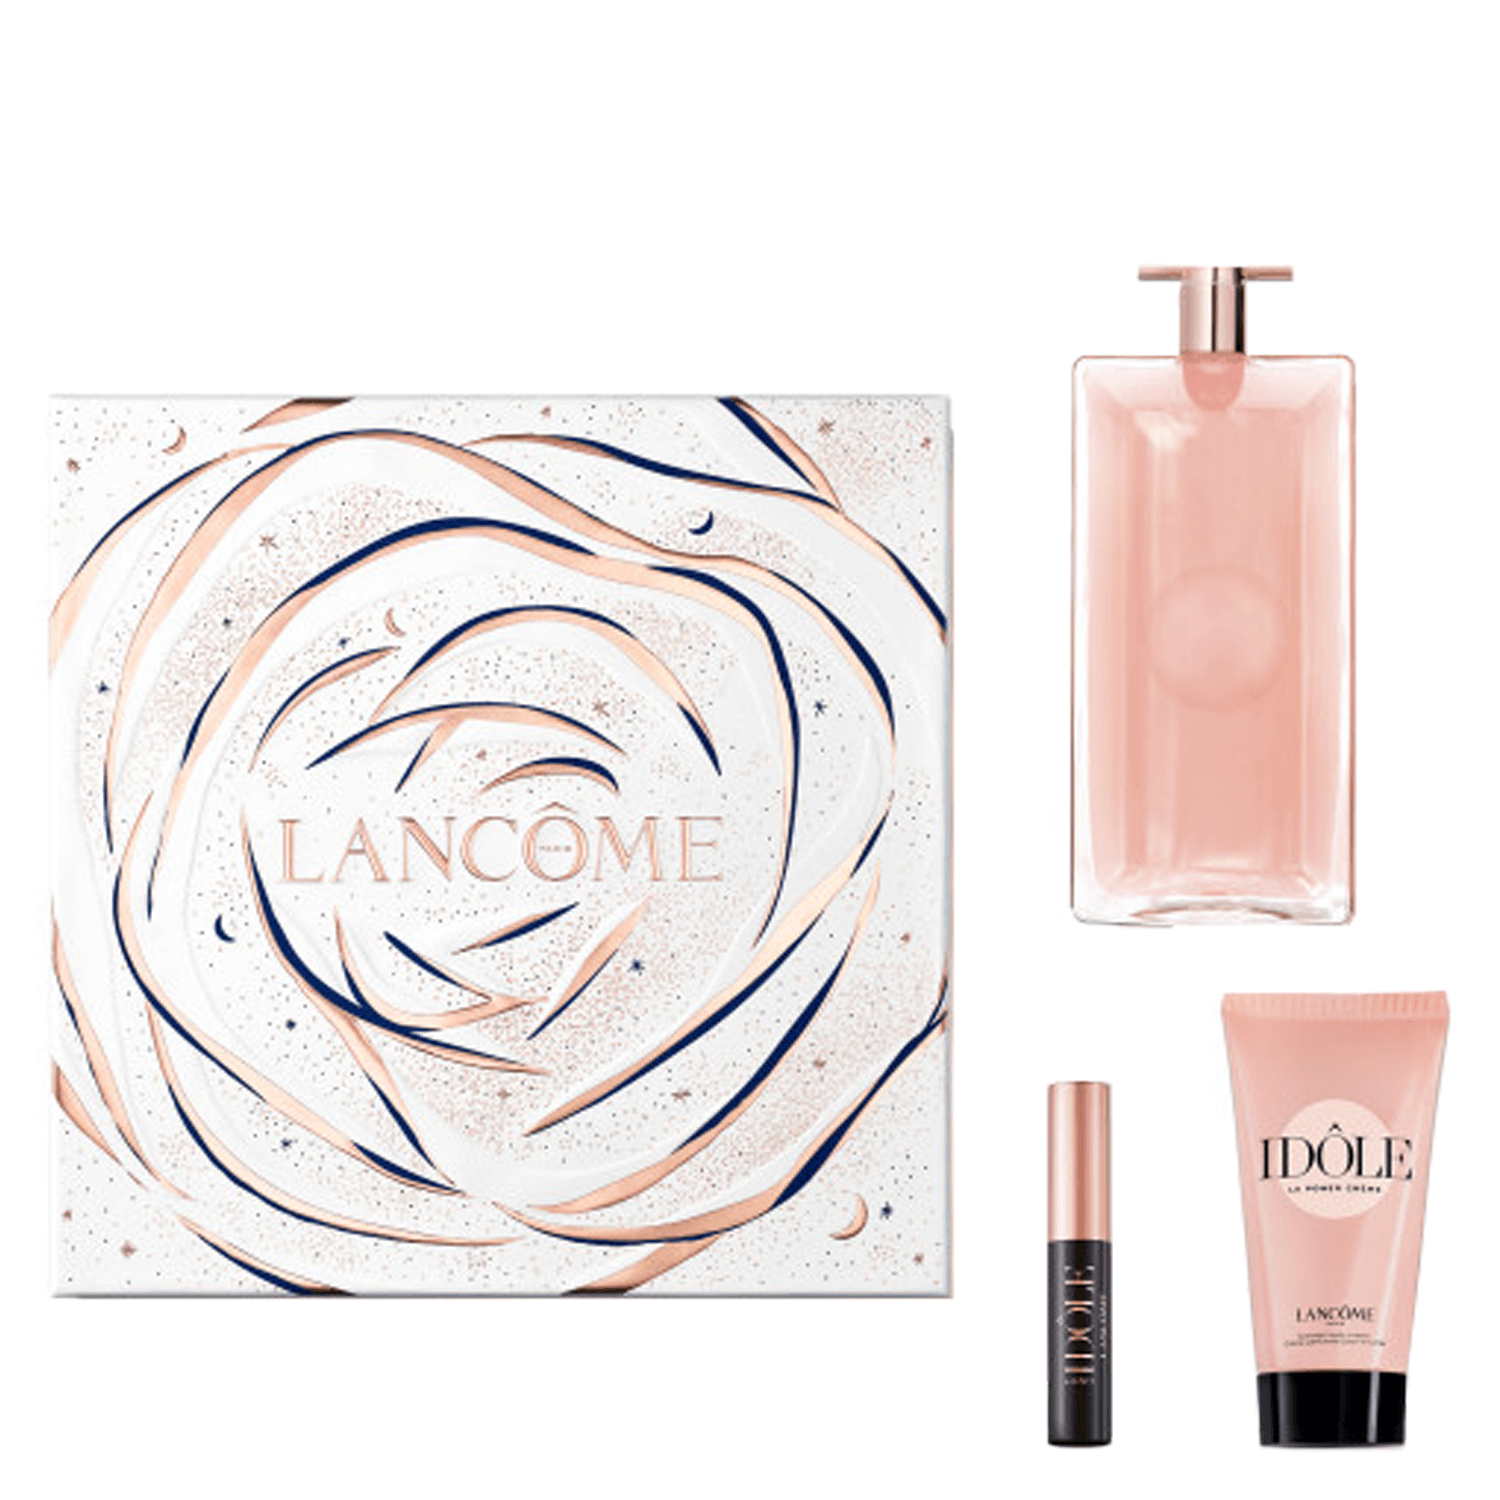 Produktbild von Lancôme Special - Idôle Eau de Parfum & Mascara Set